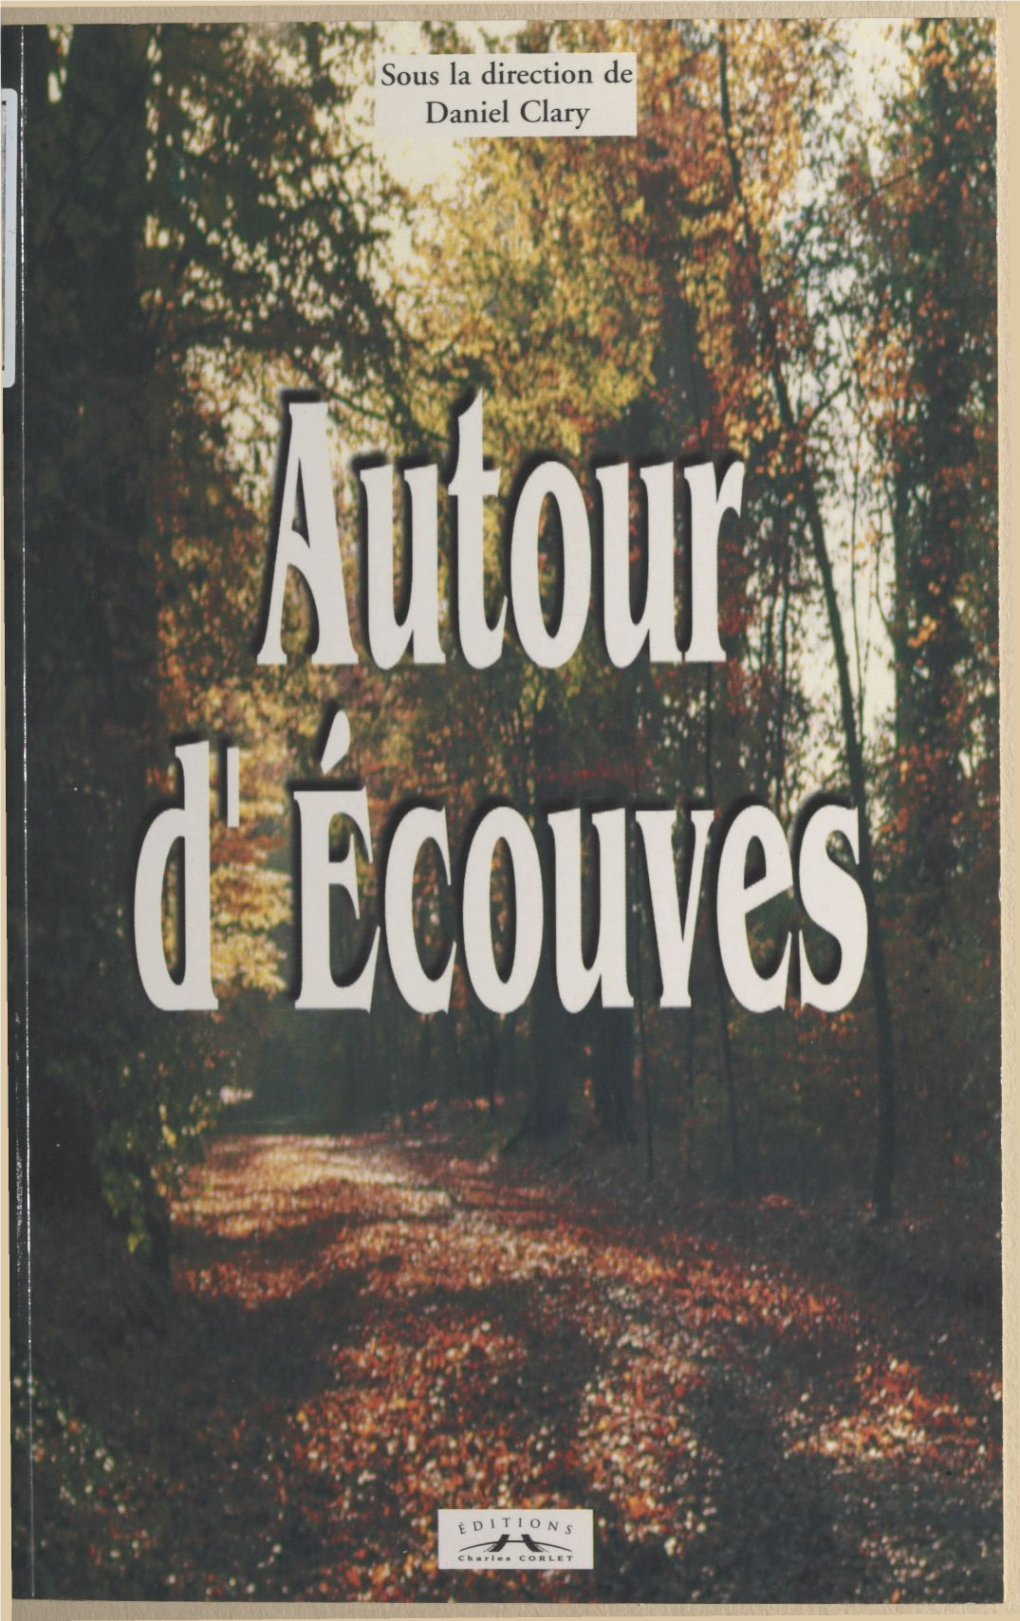 AUTOUR D'écouves © Éditions Charles Corlet, 1988 ISBN: 2-85480-118-0 Sous La Direction De Daniel Clary